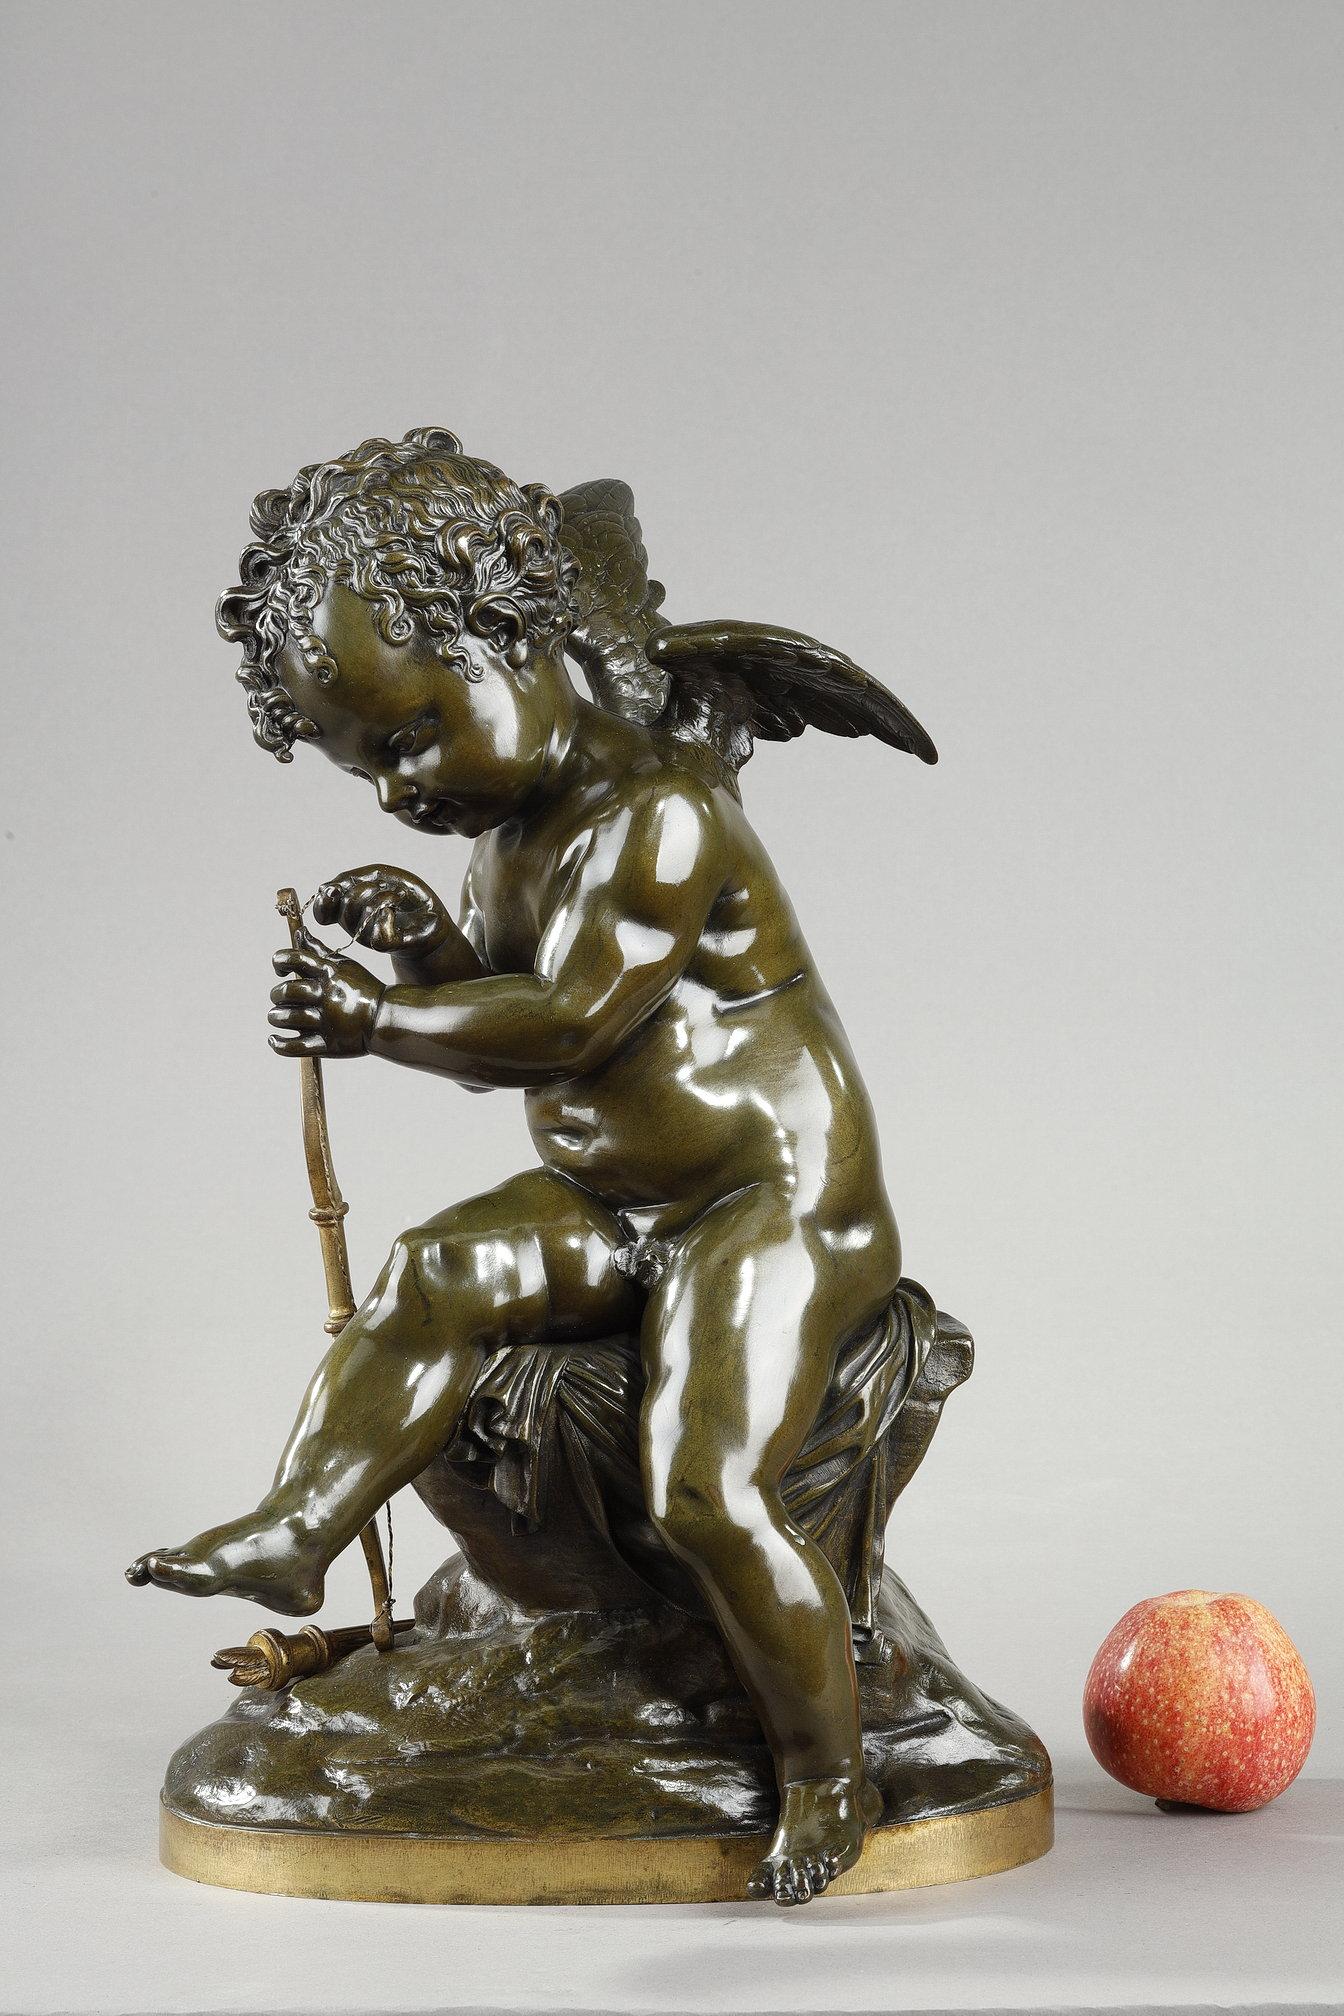 Grün patinierter Bronzeabzug eines Amors, der seinen Bogen spannt, nach einem Marmororiginal, das auf dem Salon von 1814 von Charles Gabriel Sauvage dit Lemire (1741-1827) präsentiert wurde. Die Liebe ist sitzend und konzentriert dargestellt,